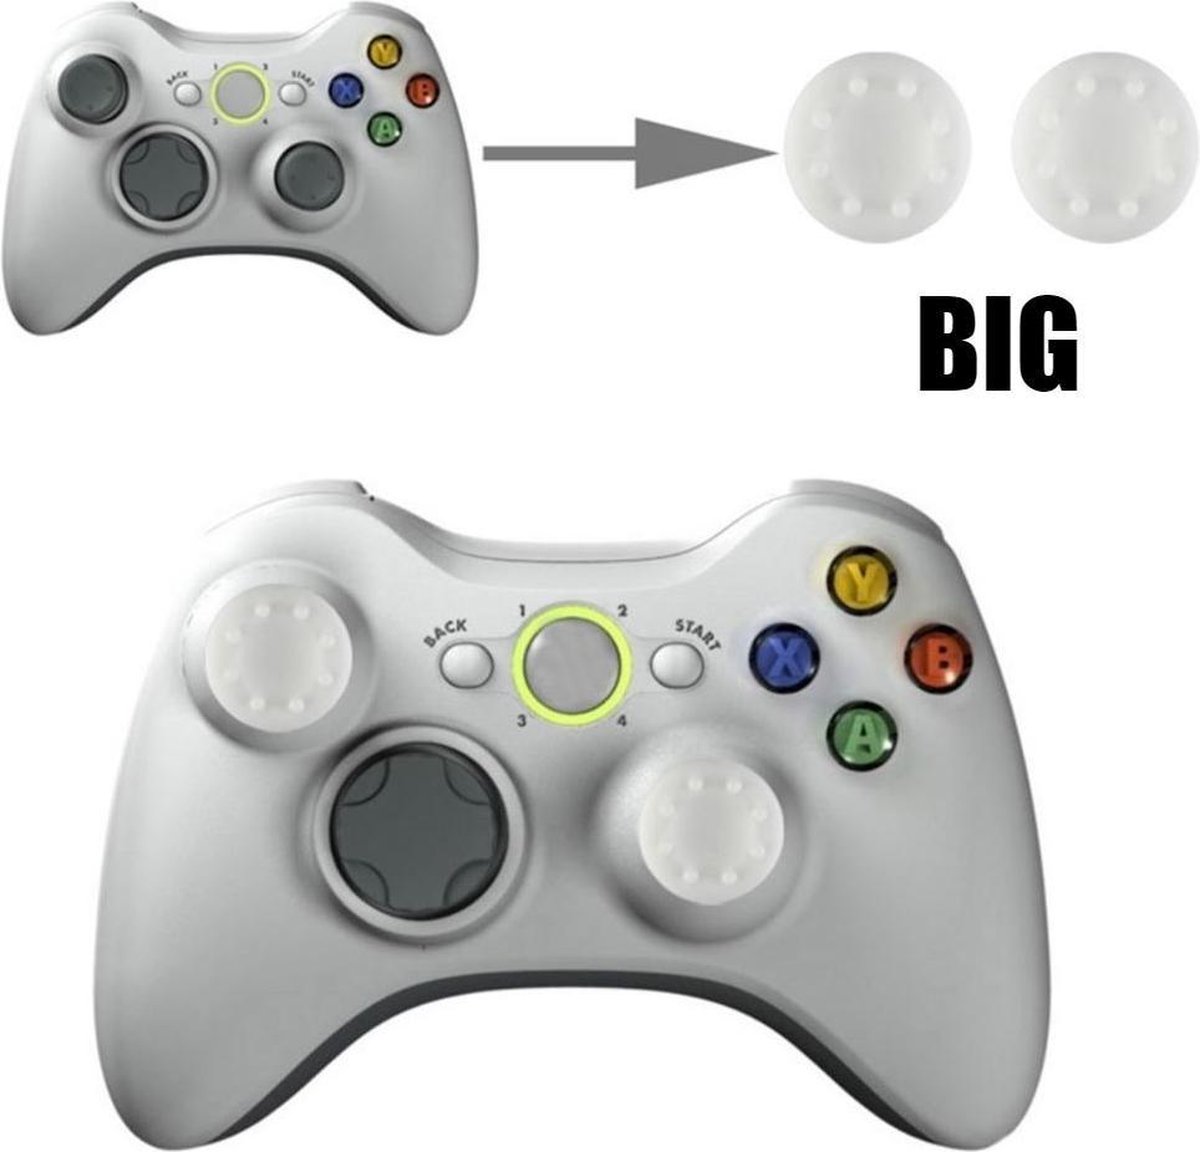 Thumb grips - Controller Thumbgrips - Joystick Cap - Thumbsticks - Thumb Grip Cap geschikt voor PS5, PS4, Switch Pro, Steamdeck en Xbox X/S - 2 stuks Groot 8 dots extra grip Wit